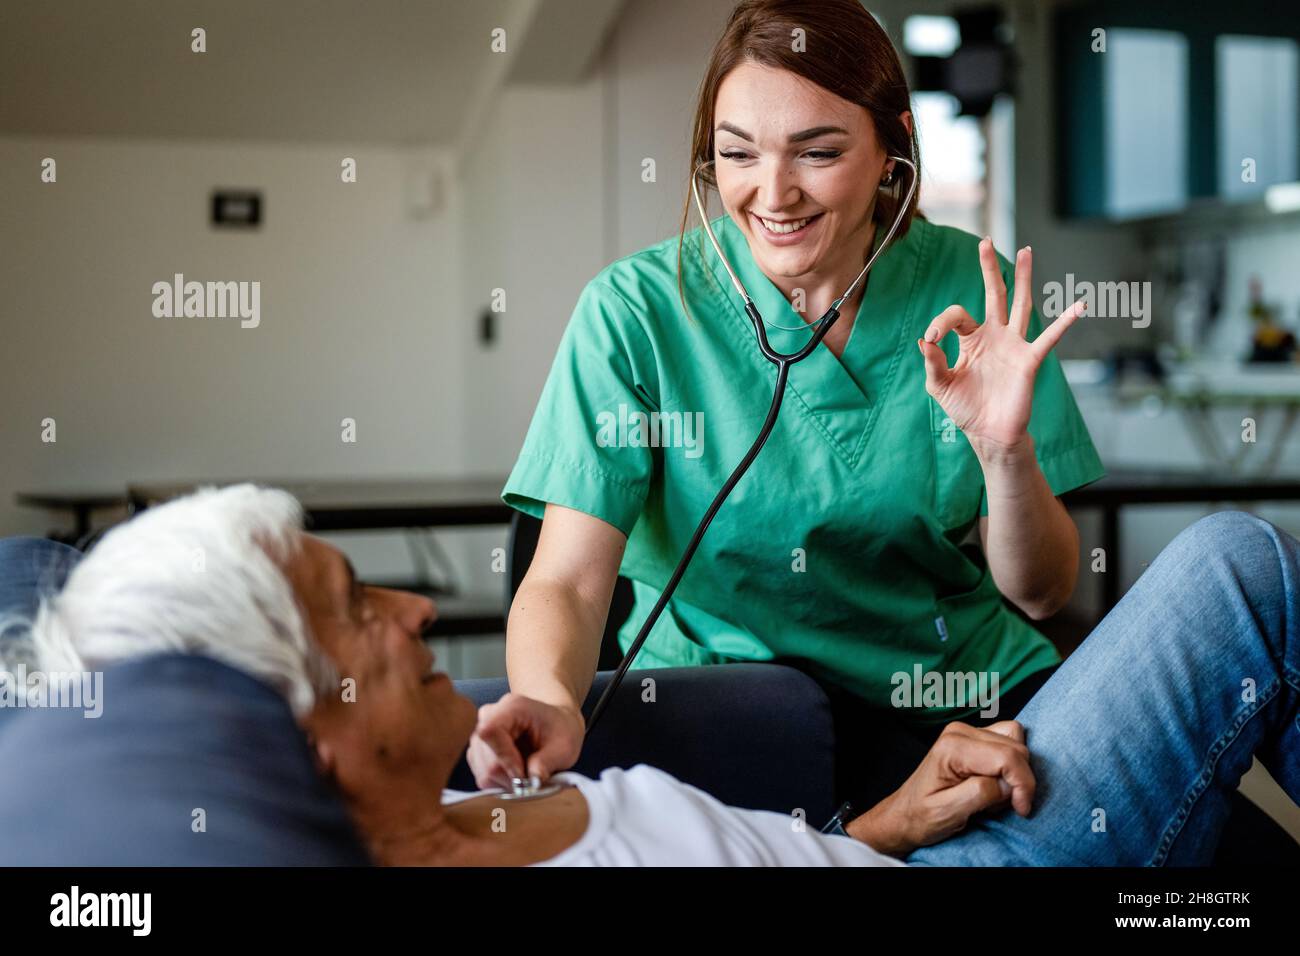 Visitante de salud usando estetoscopio para verificar la salud de un hombre mayor, enfermera joven gesturing ok con la mano durante una visita a casa, concepto de cuidado de salud en el hogar Foto de stock